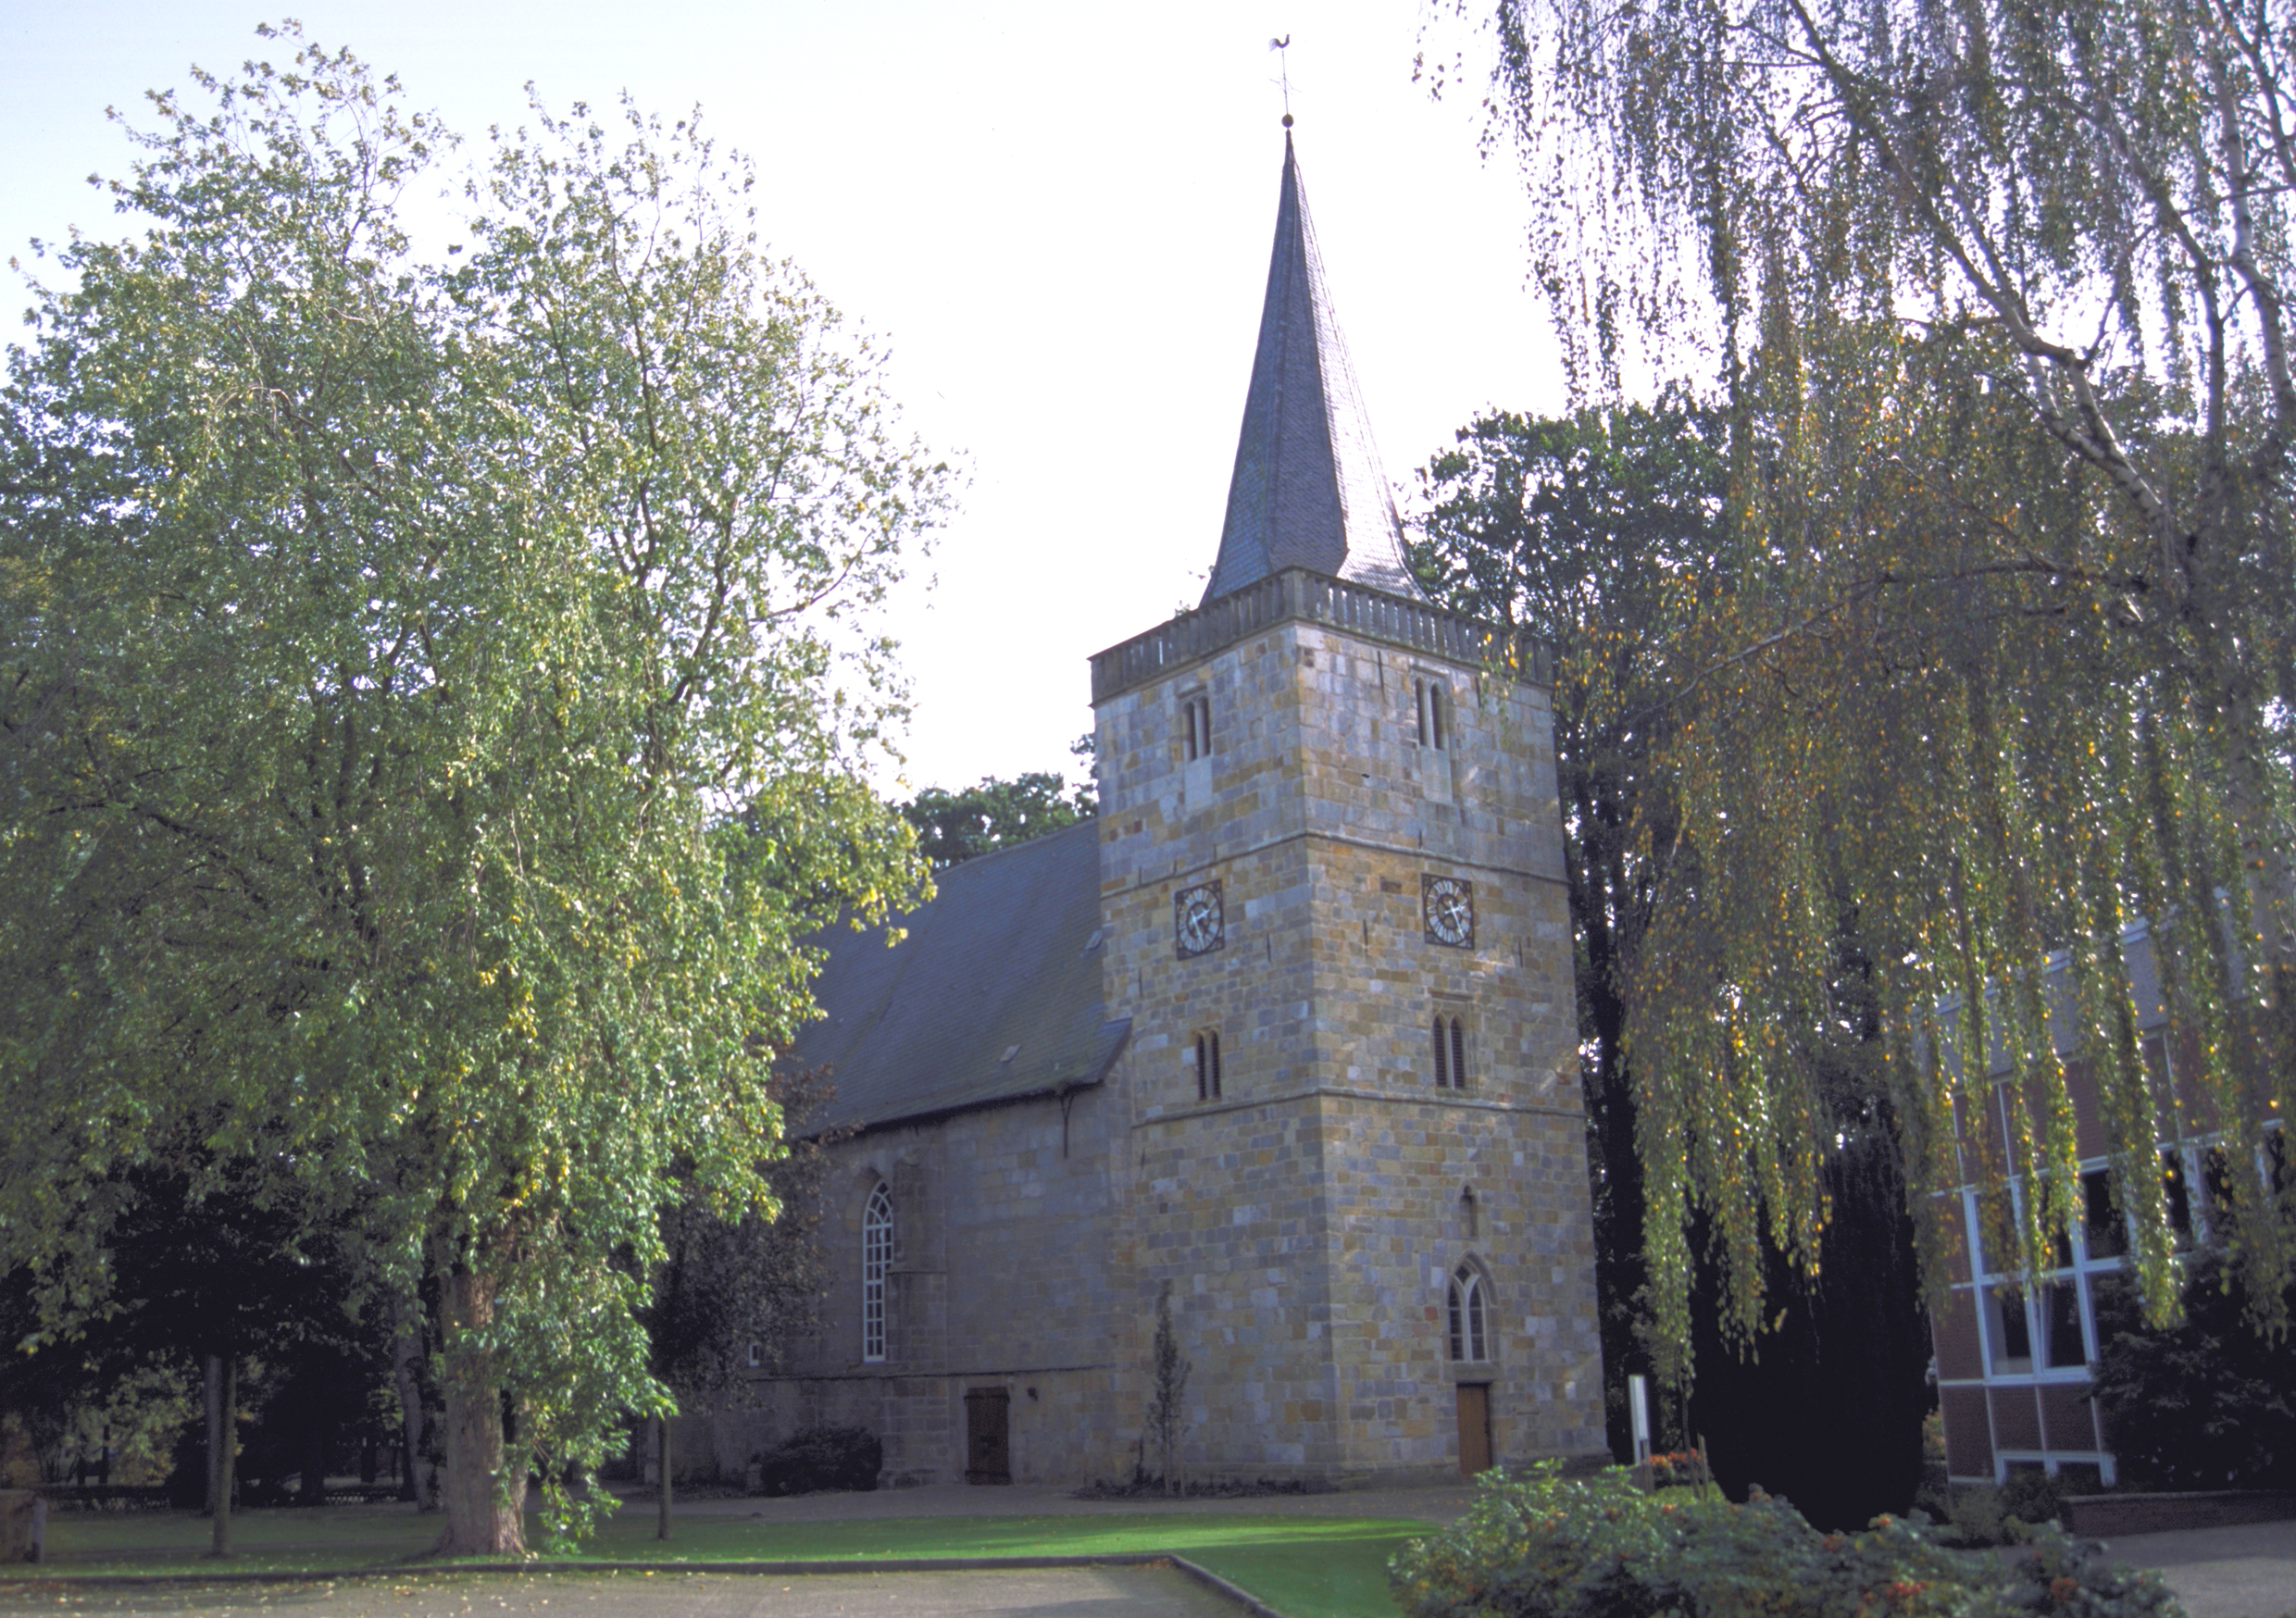 Reformierte Kirche Emlichheim.
